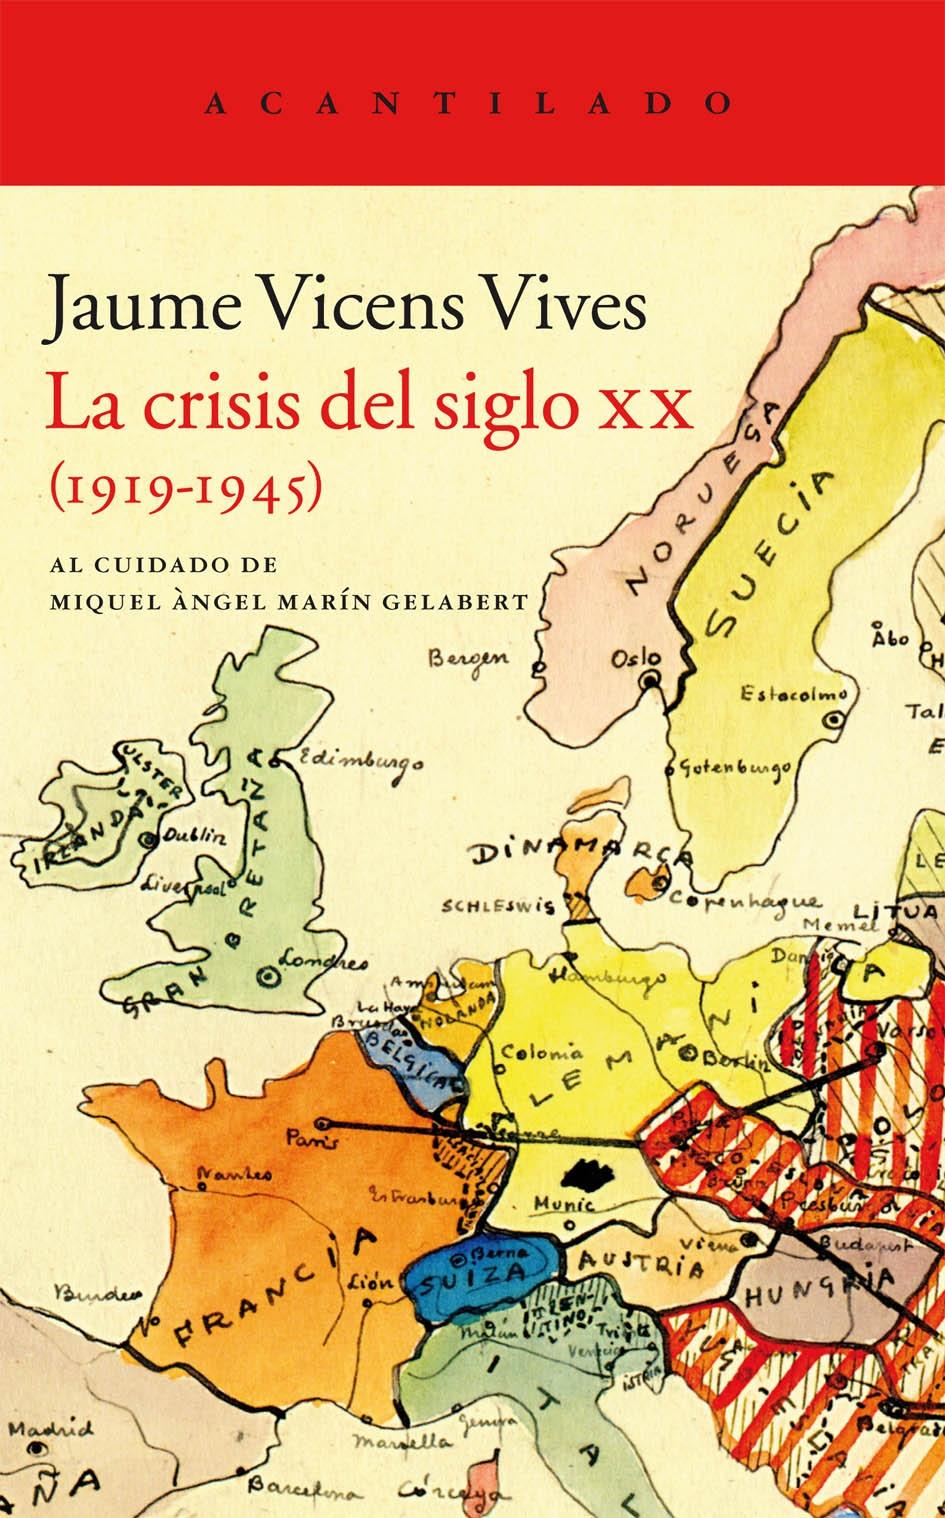 La crisis del siglo XX "(1919-1945)"